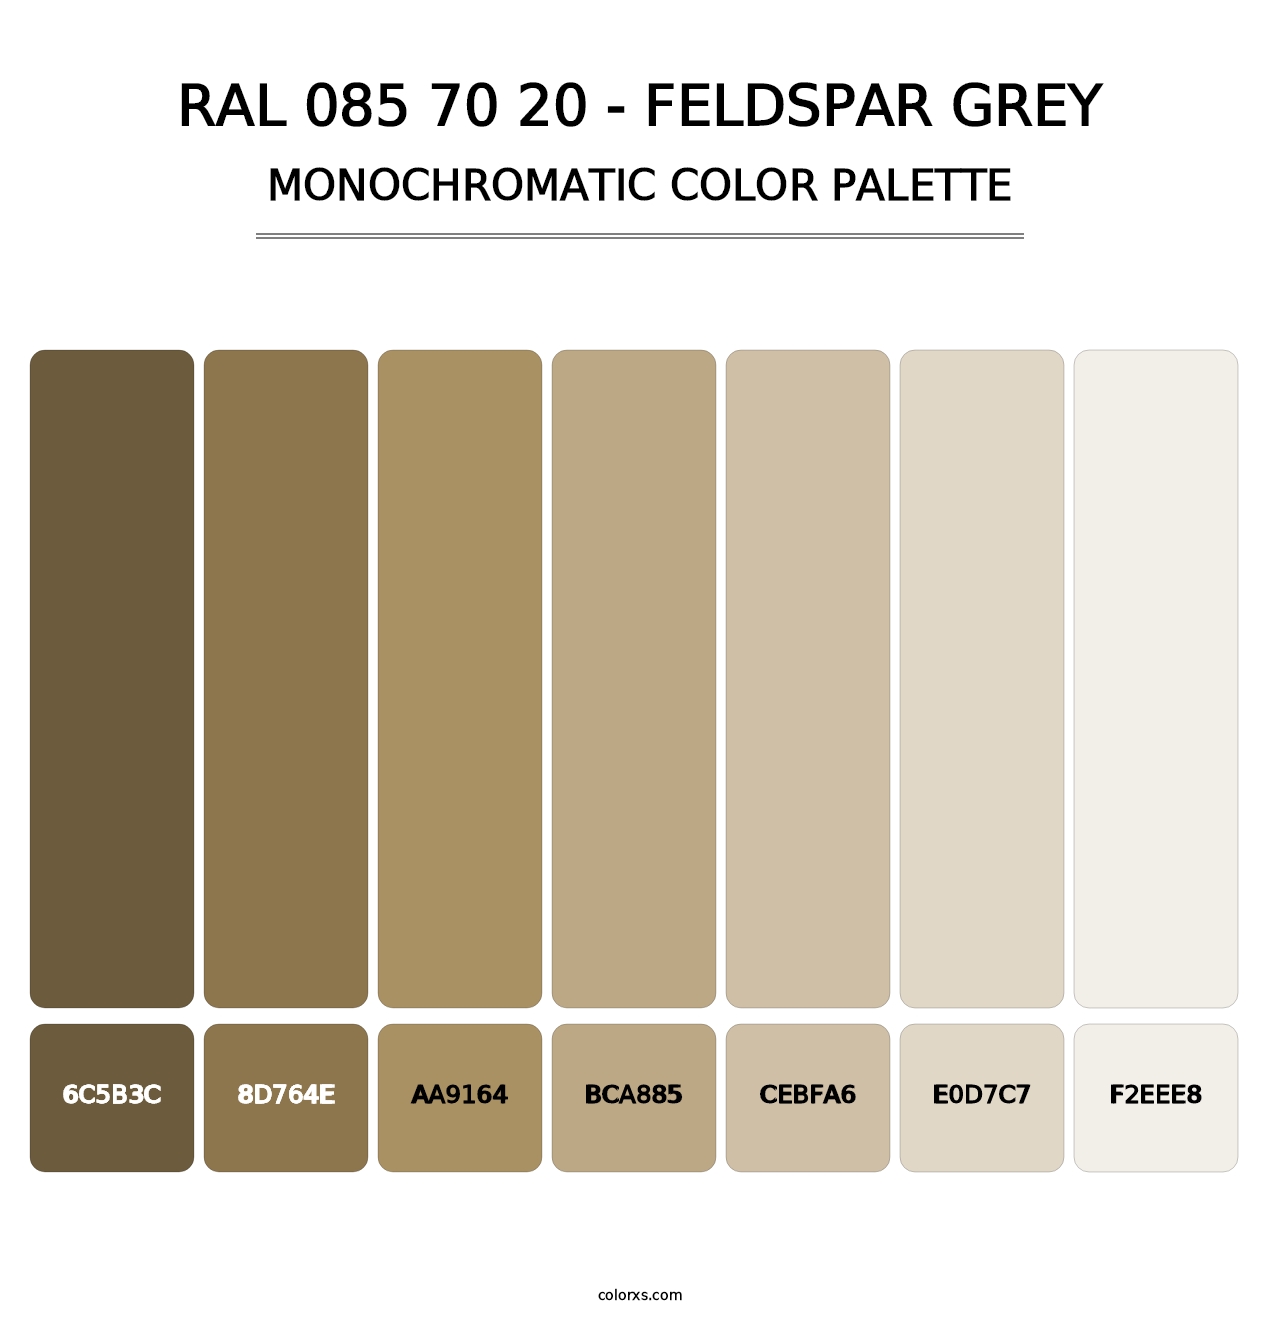 RAL 085 70 20 - Feldspar Grey - Monochromatic Color Palette